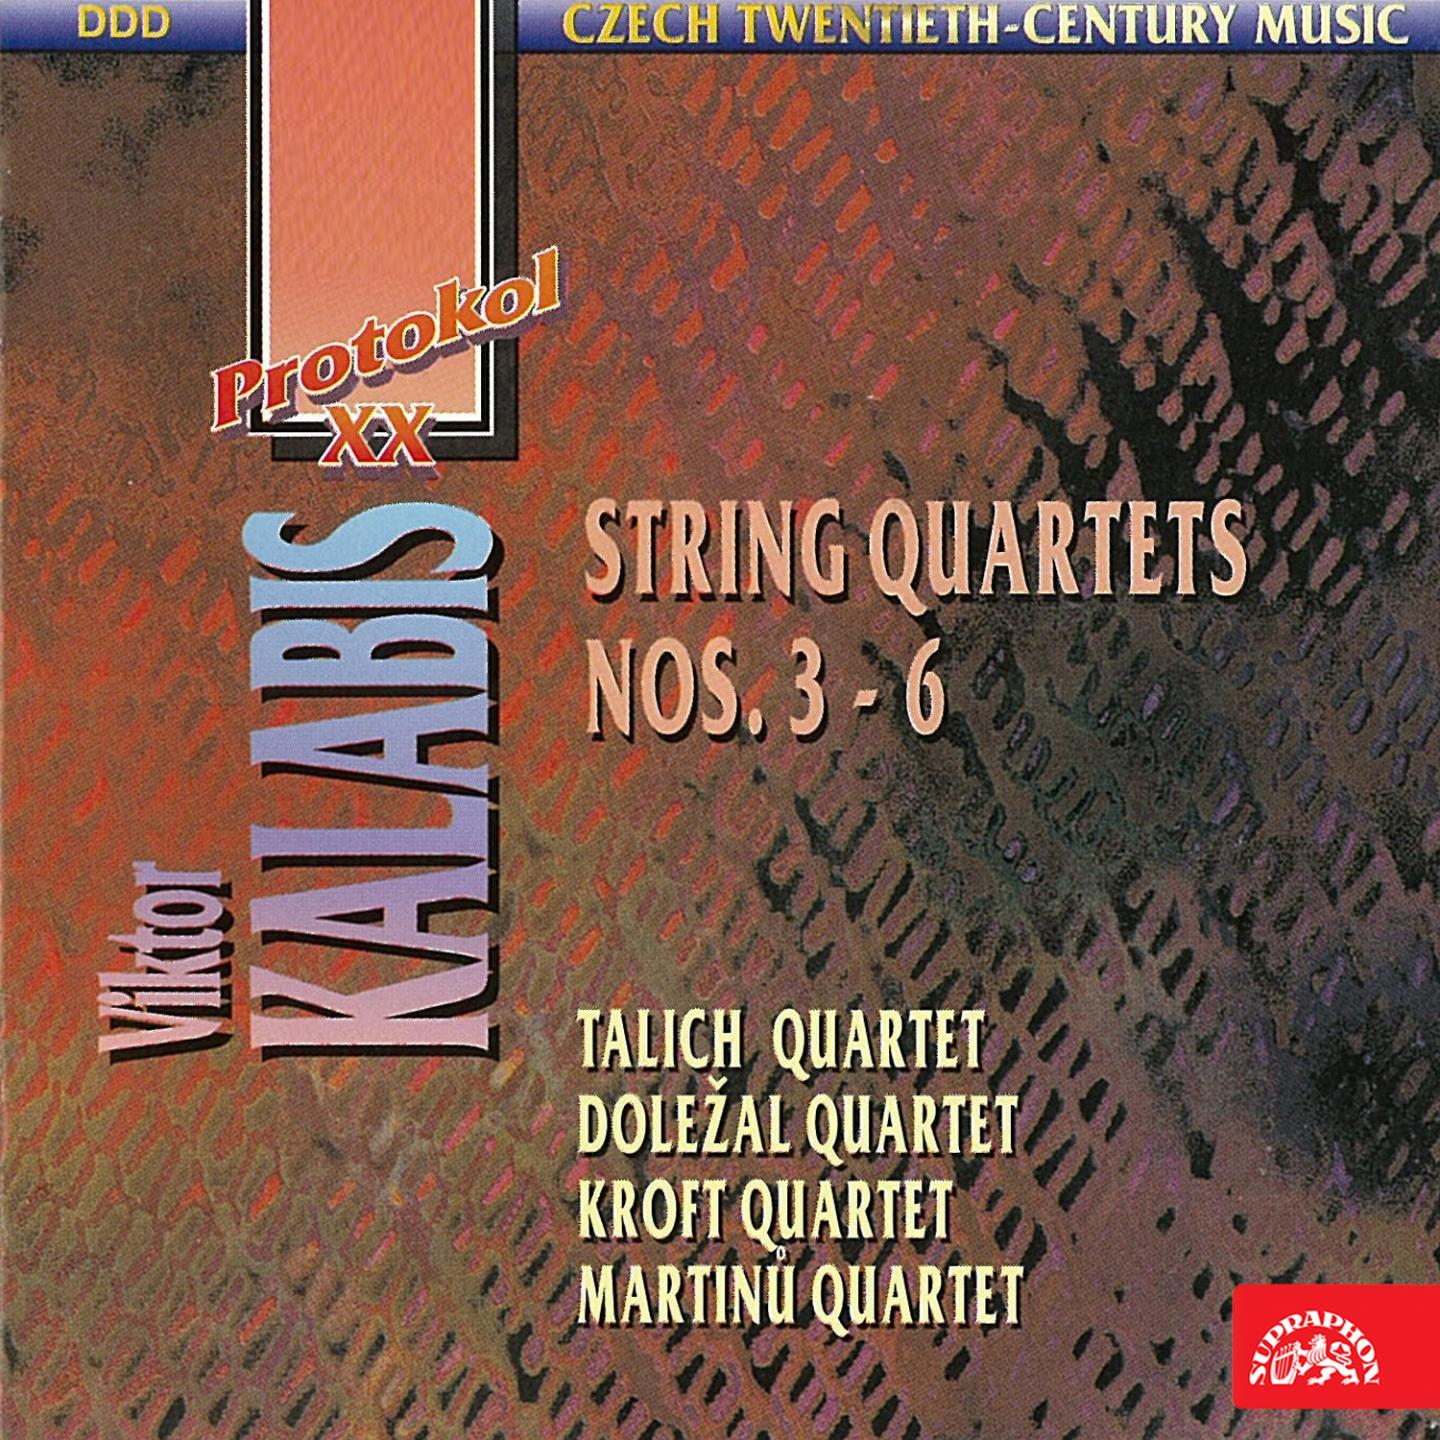 String Quartet No. 3, Op. 48: III. Allegro vivo - Adagio - Allegro